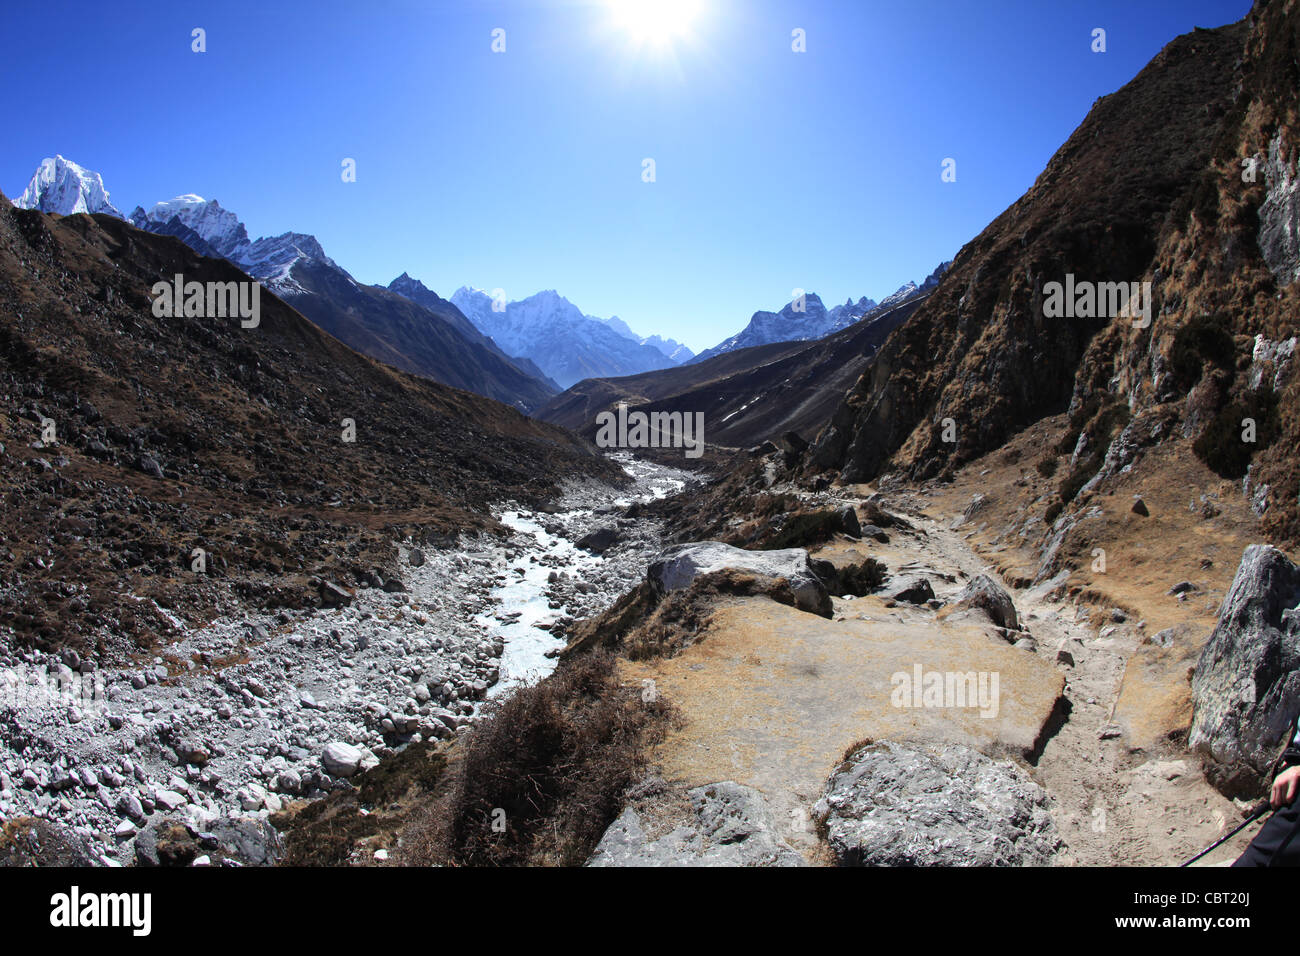 Vista del Valle de Gokyo River en el Himalaya Foto de stock